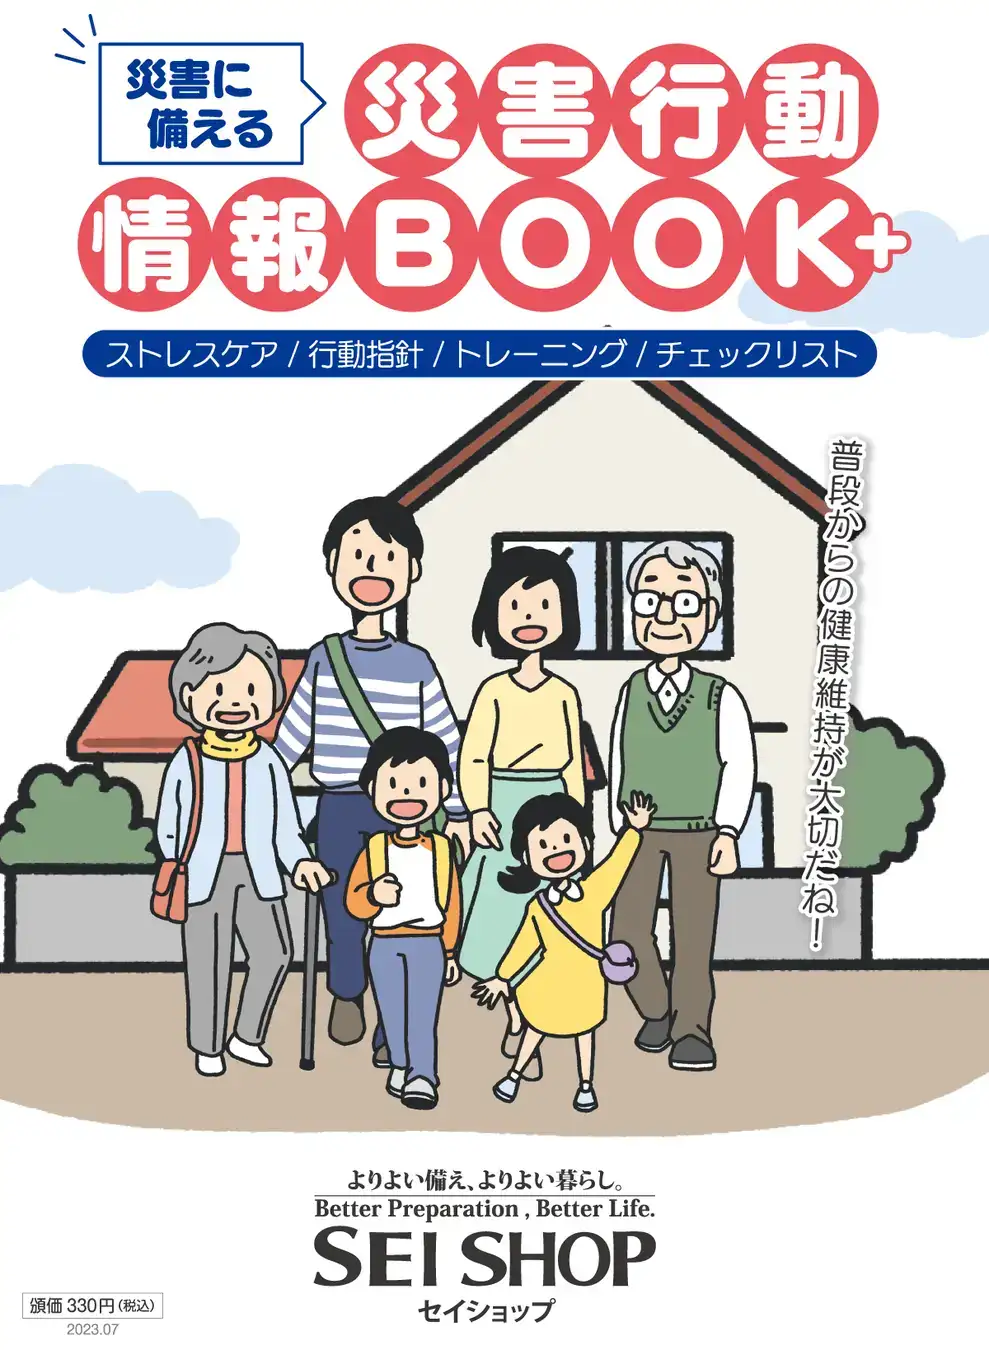 セイショップオリジナル「災害行動情報BOOK+」